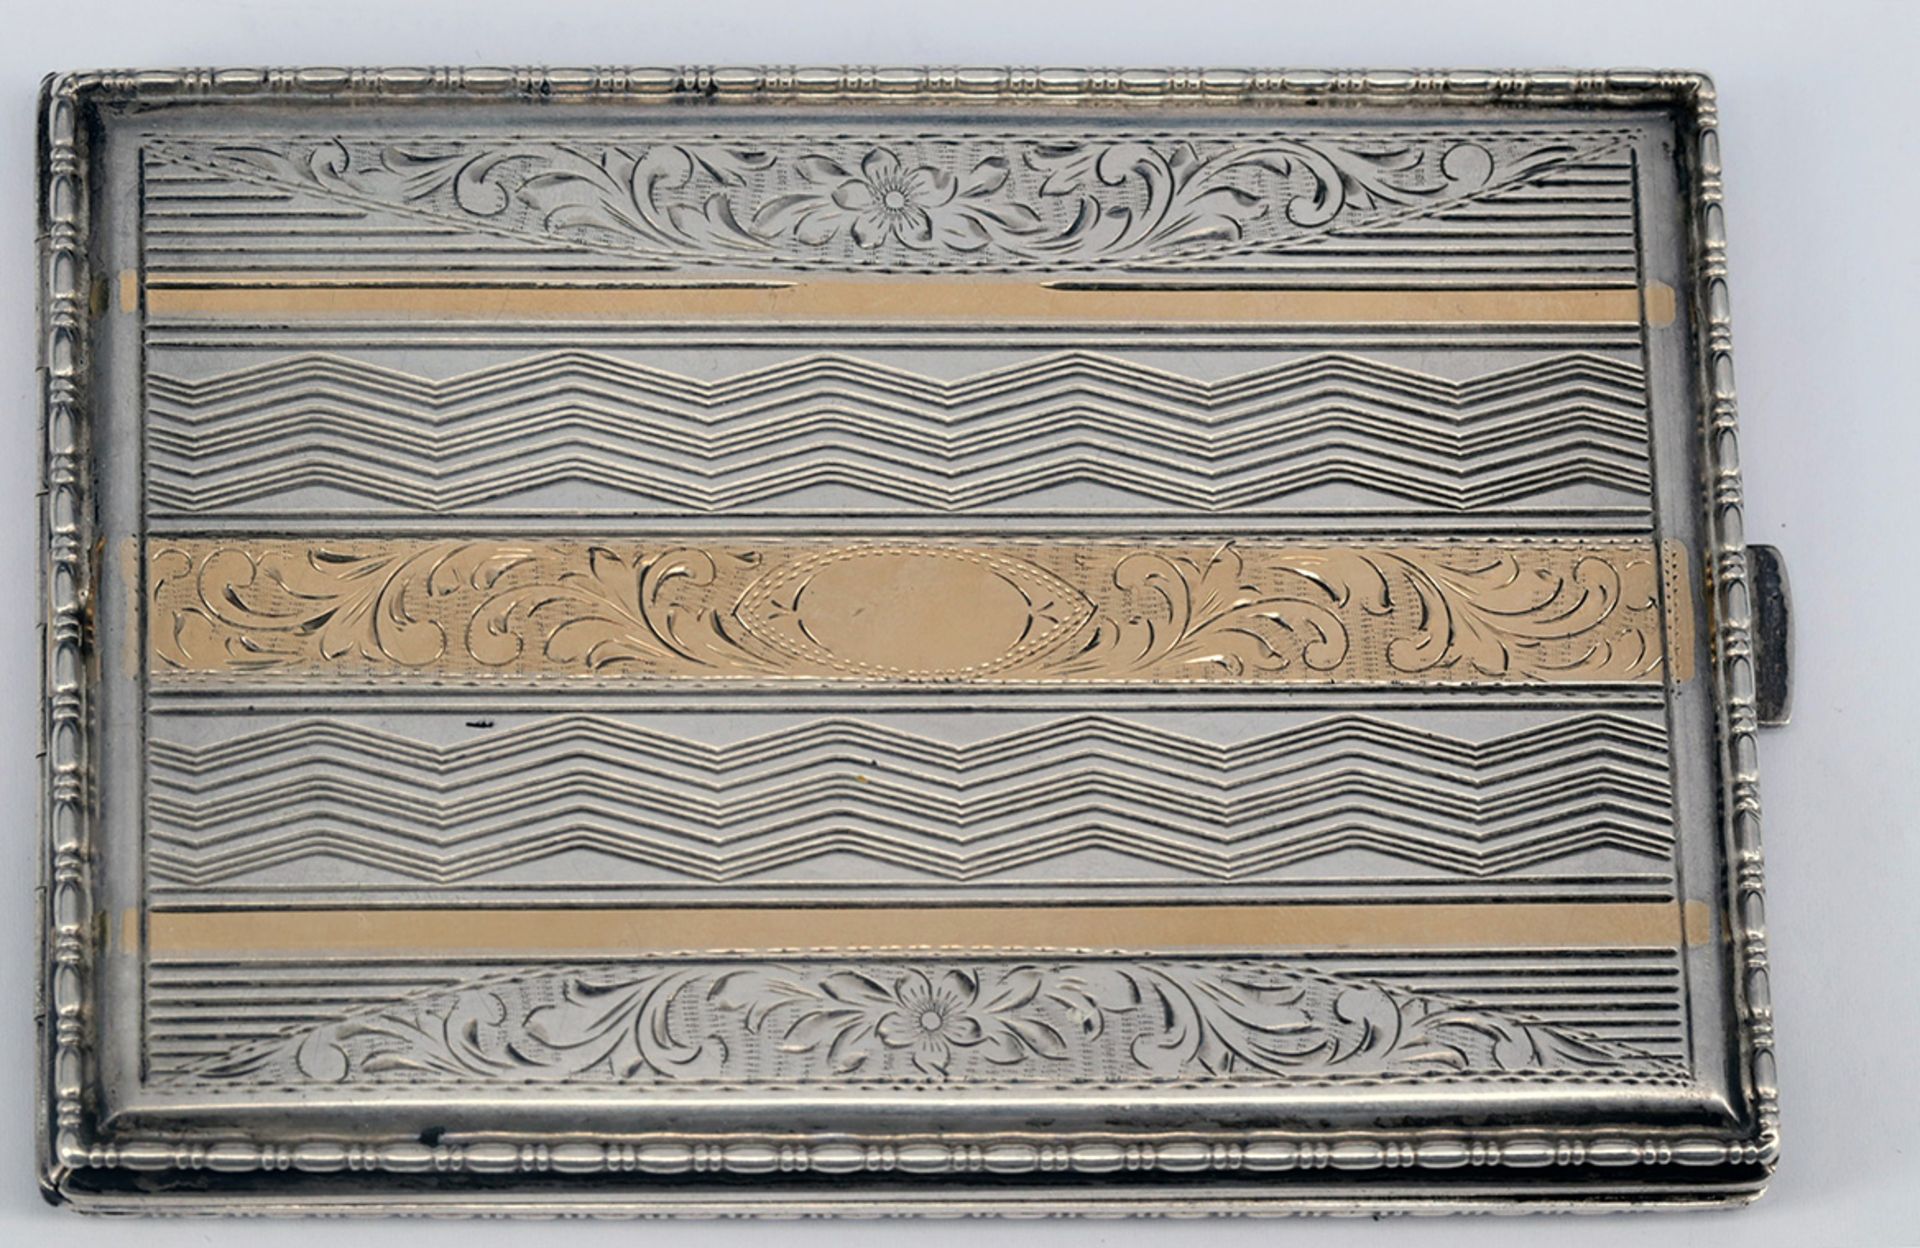 Zigarettendose, Silber (geprüft), mit Ornamentik teils in 585er Gold, 7,5 x 10,8 cm, Altersspuren,